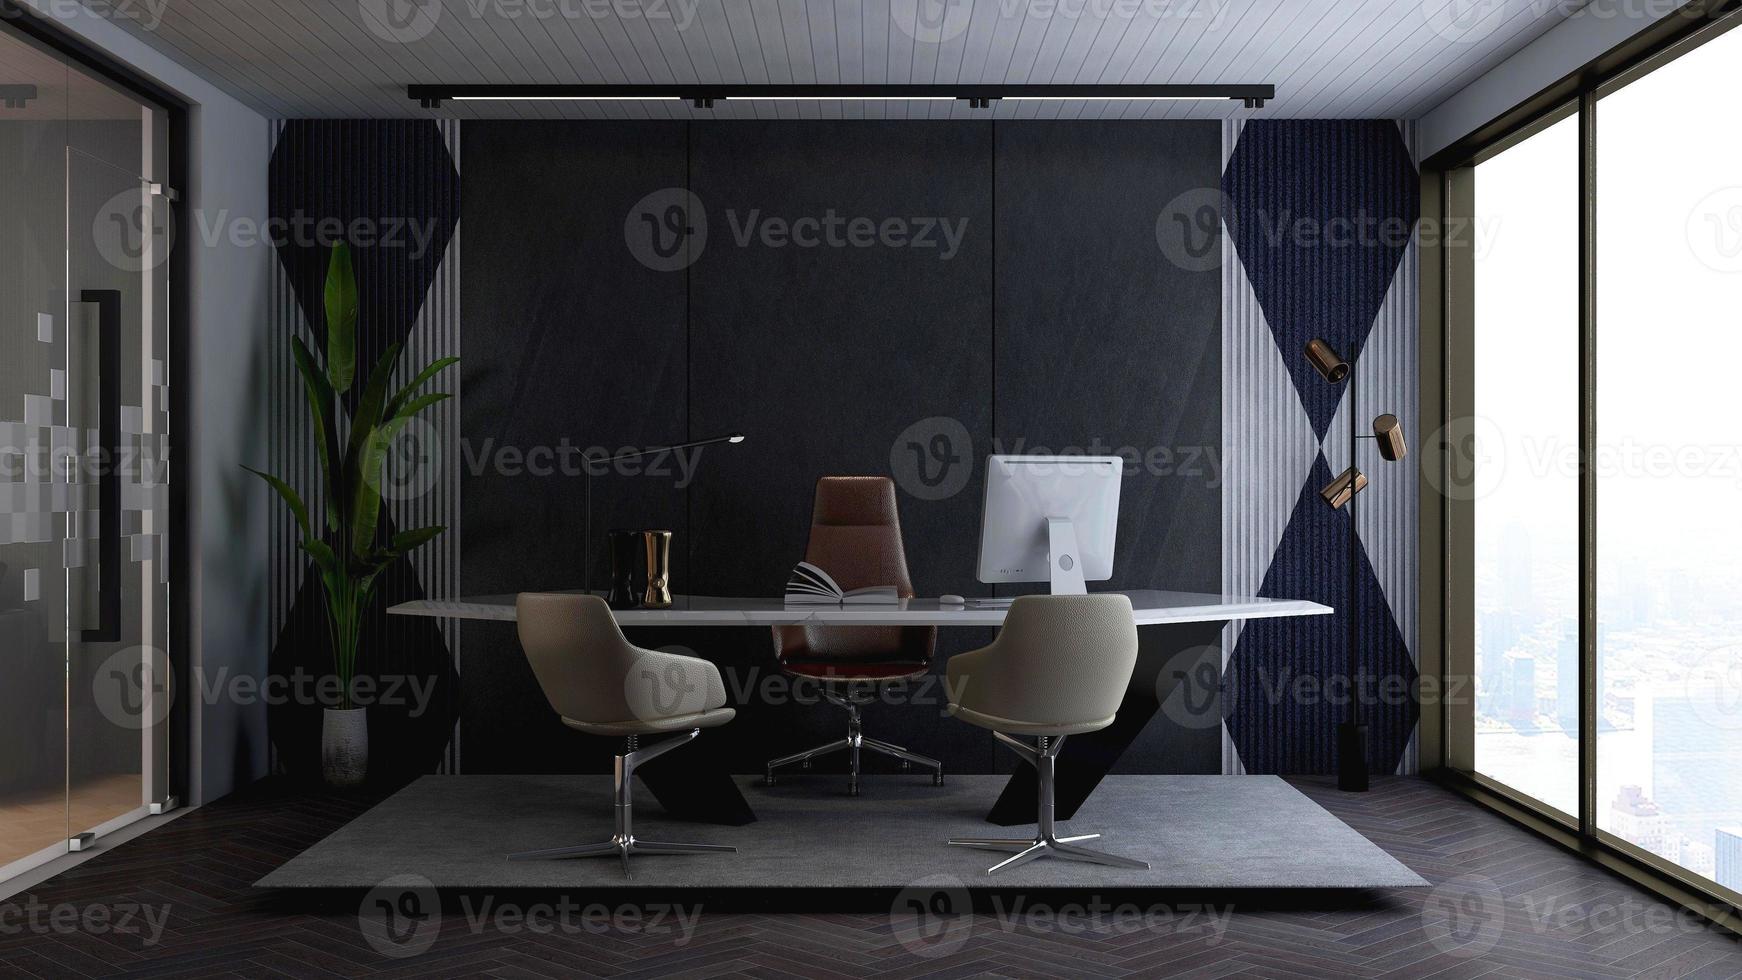 3D-Rendering-Bürodesign - Innenwandmodell des Managerraums foto